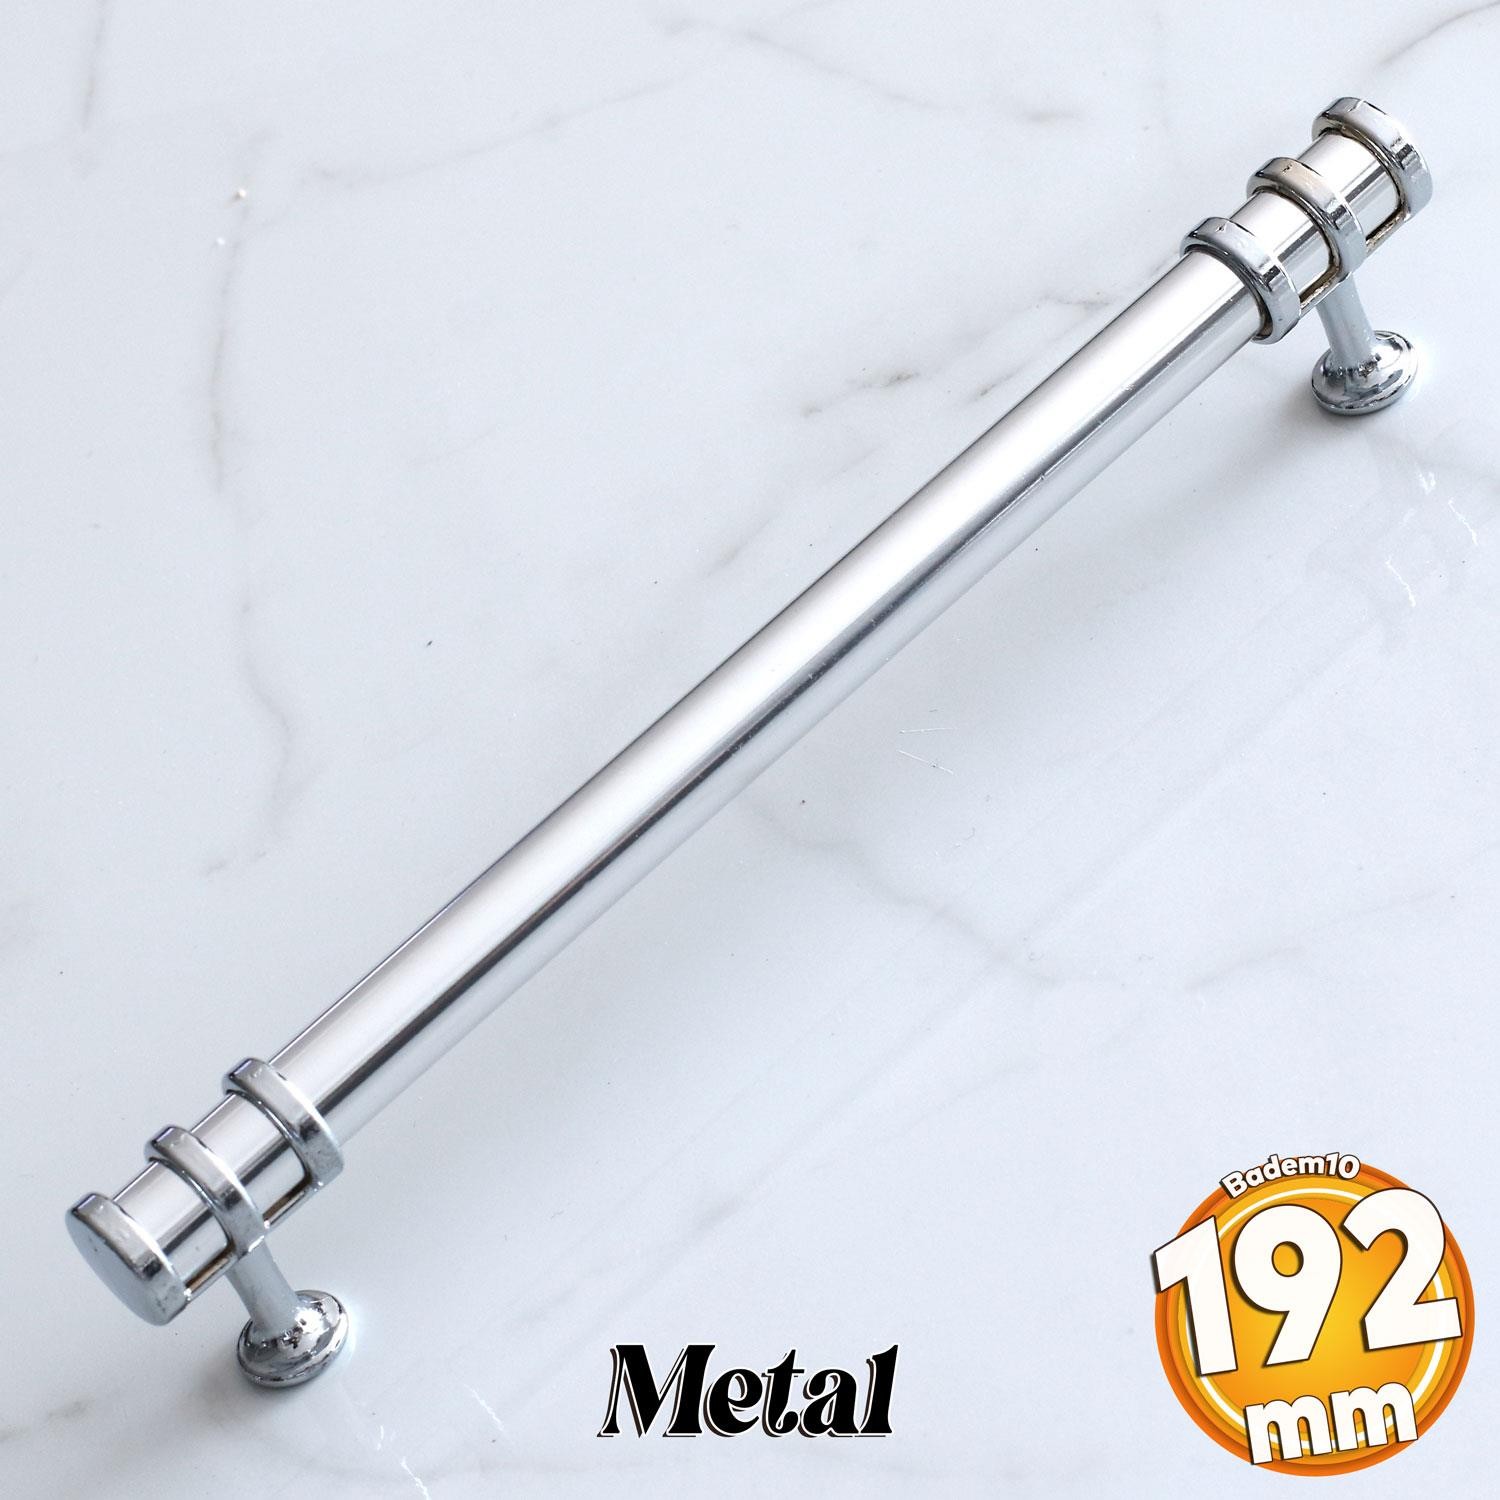 Yüzük Kulp 192 mm Krom Metal Mobilya Mutfak Çekmece Dolap Kapak Kulpları Dolabı Kulbu Kulpu 19.2 cm